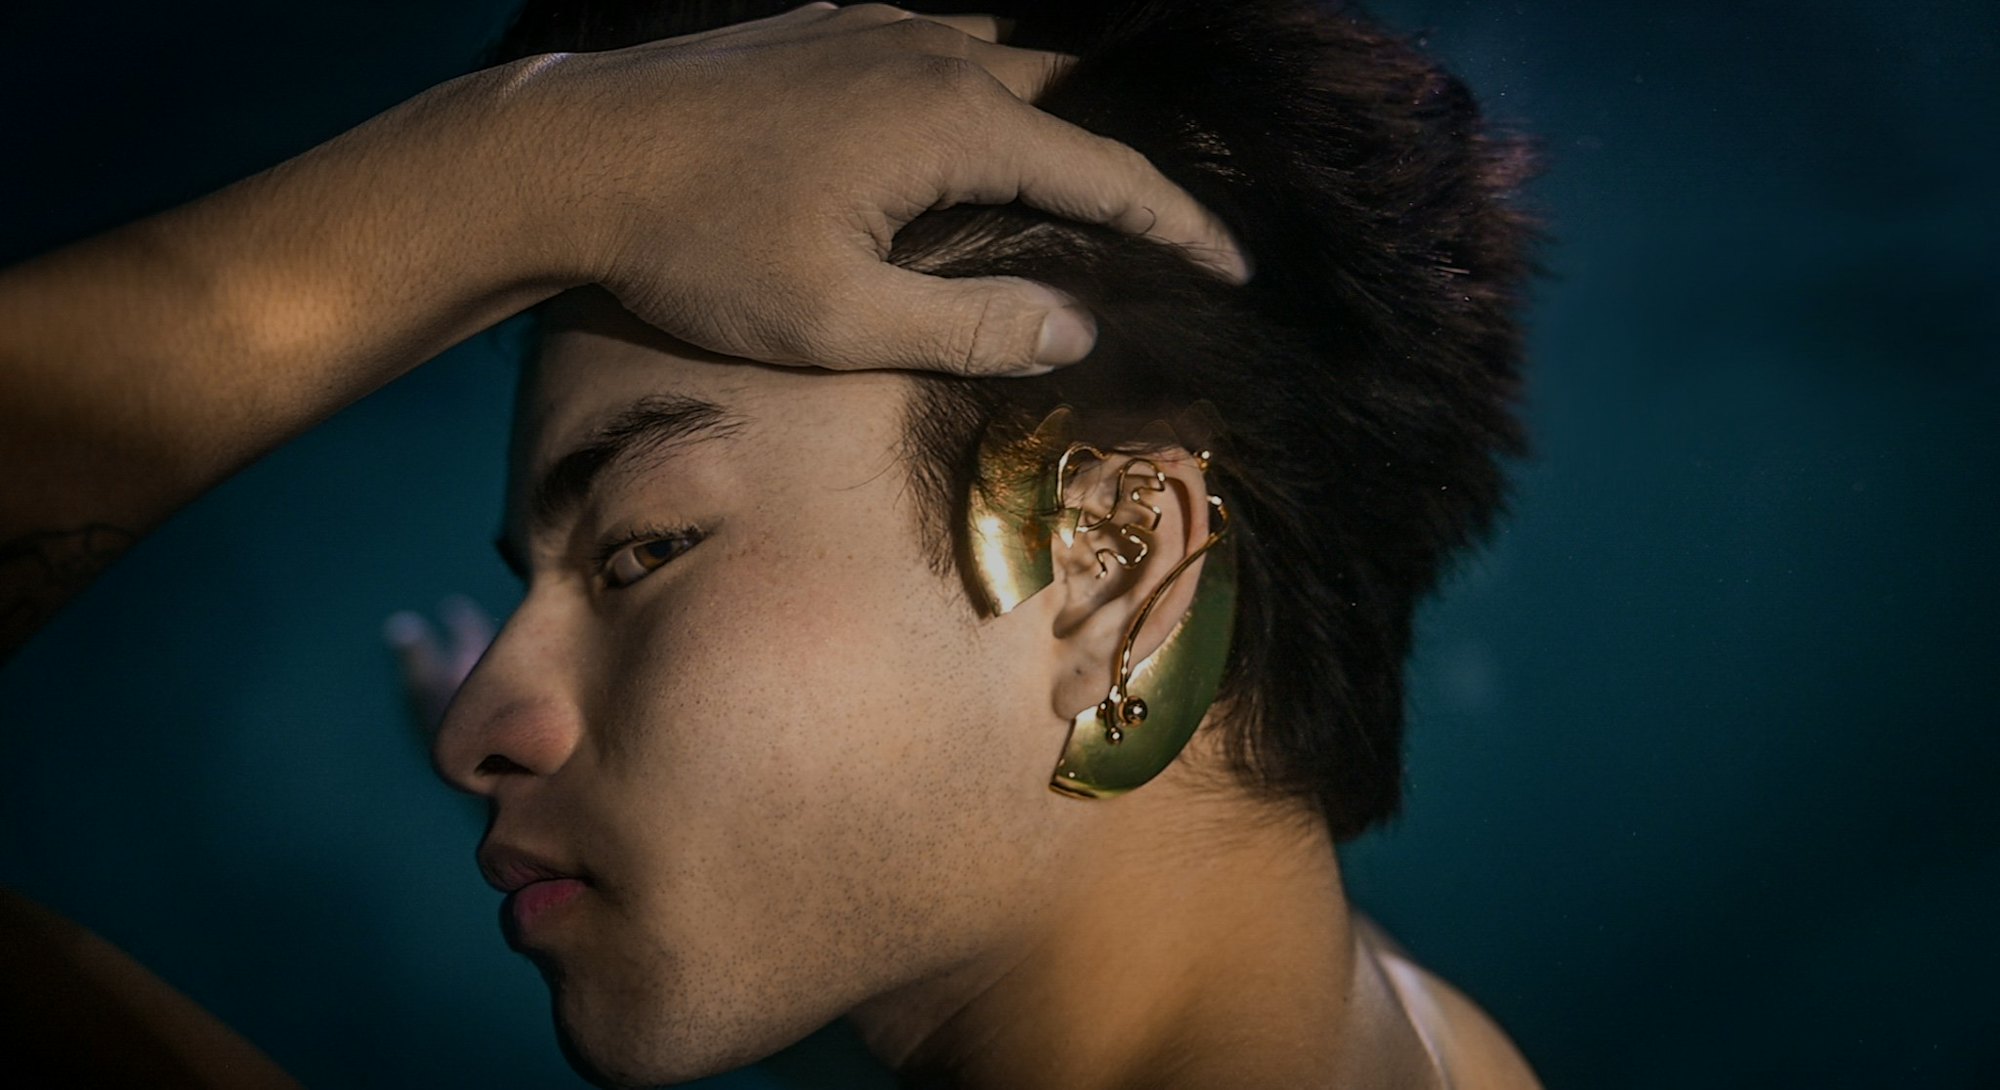 A model is seen showcasing ear jewel hearing implants underwater. Jewelry. Earrings. Fashion. Design...